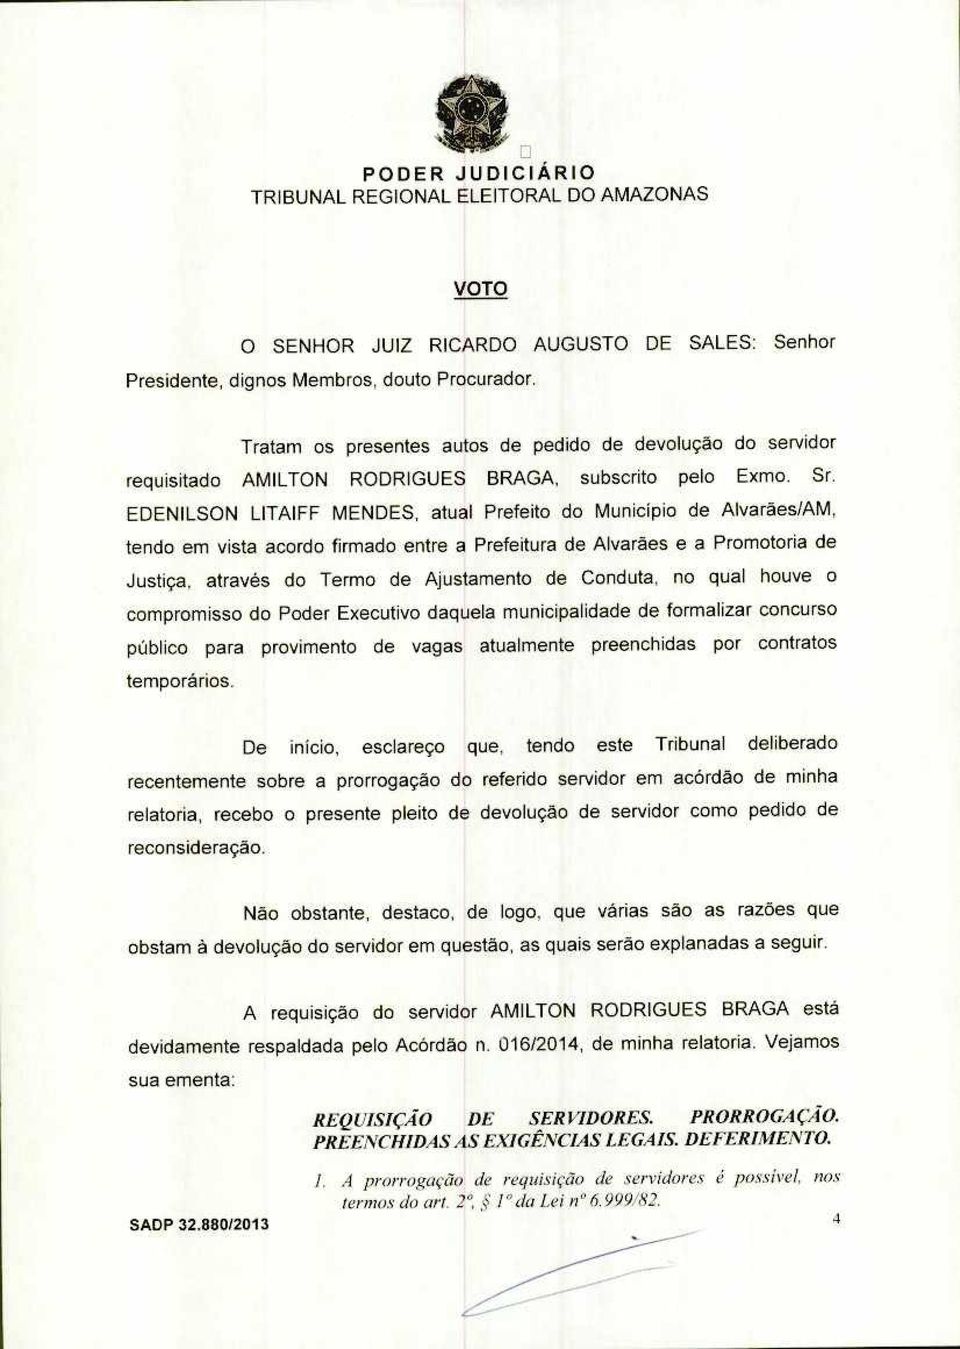 EDENILSON LITAIFF MENDES, atual Prefeito do Município de Alvarães/AM, tendo em vista acordo firmado entre a Prefeitura de Alvarães e a Promotoria de Justiça, através do Termo de Ajustamento de